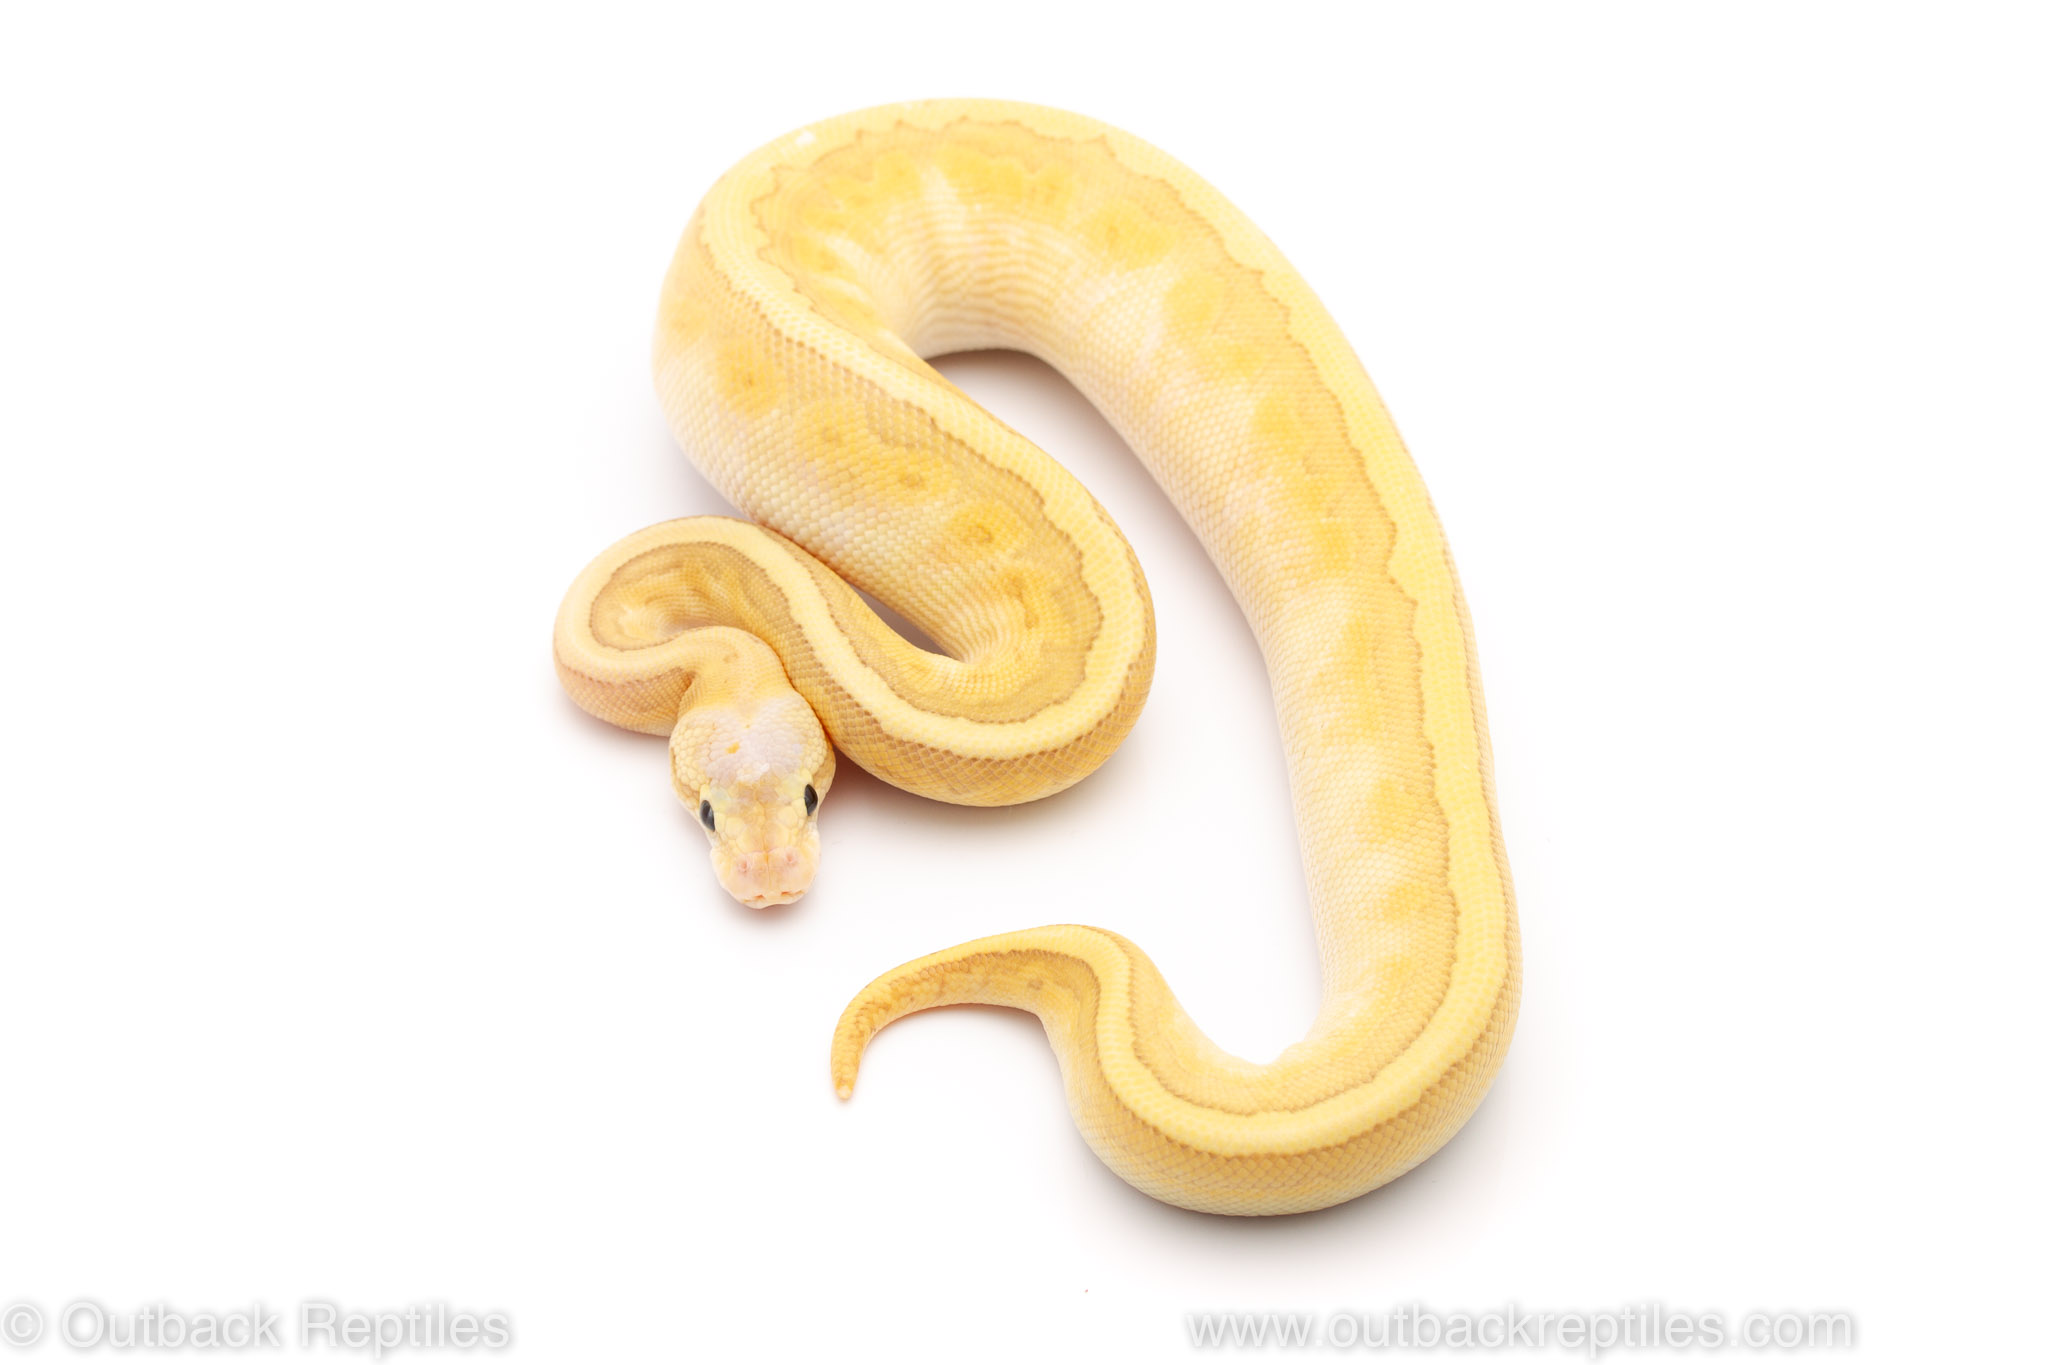 Calico Emperor Pin ball python for sale